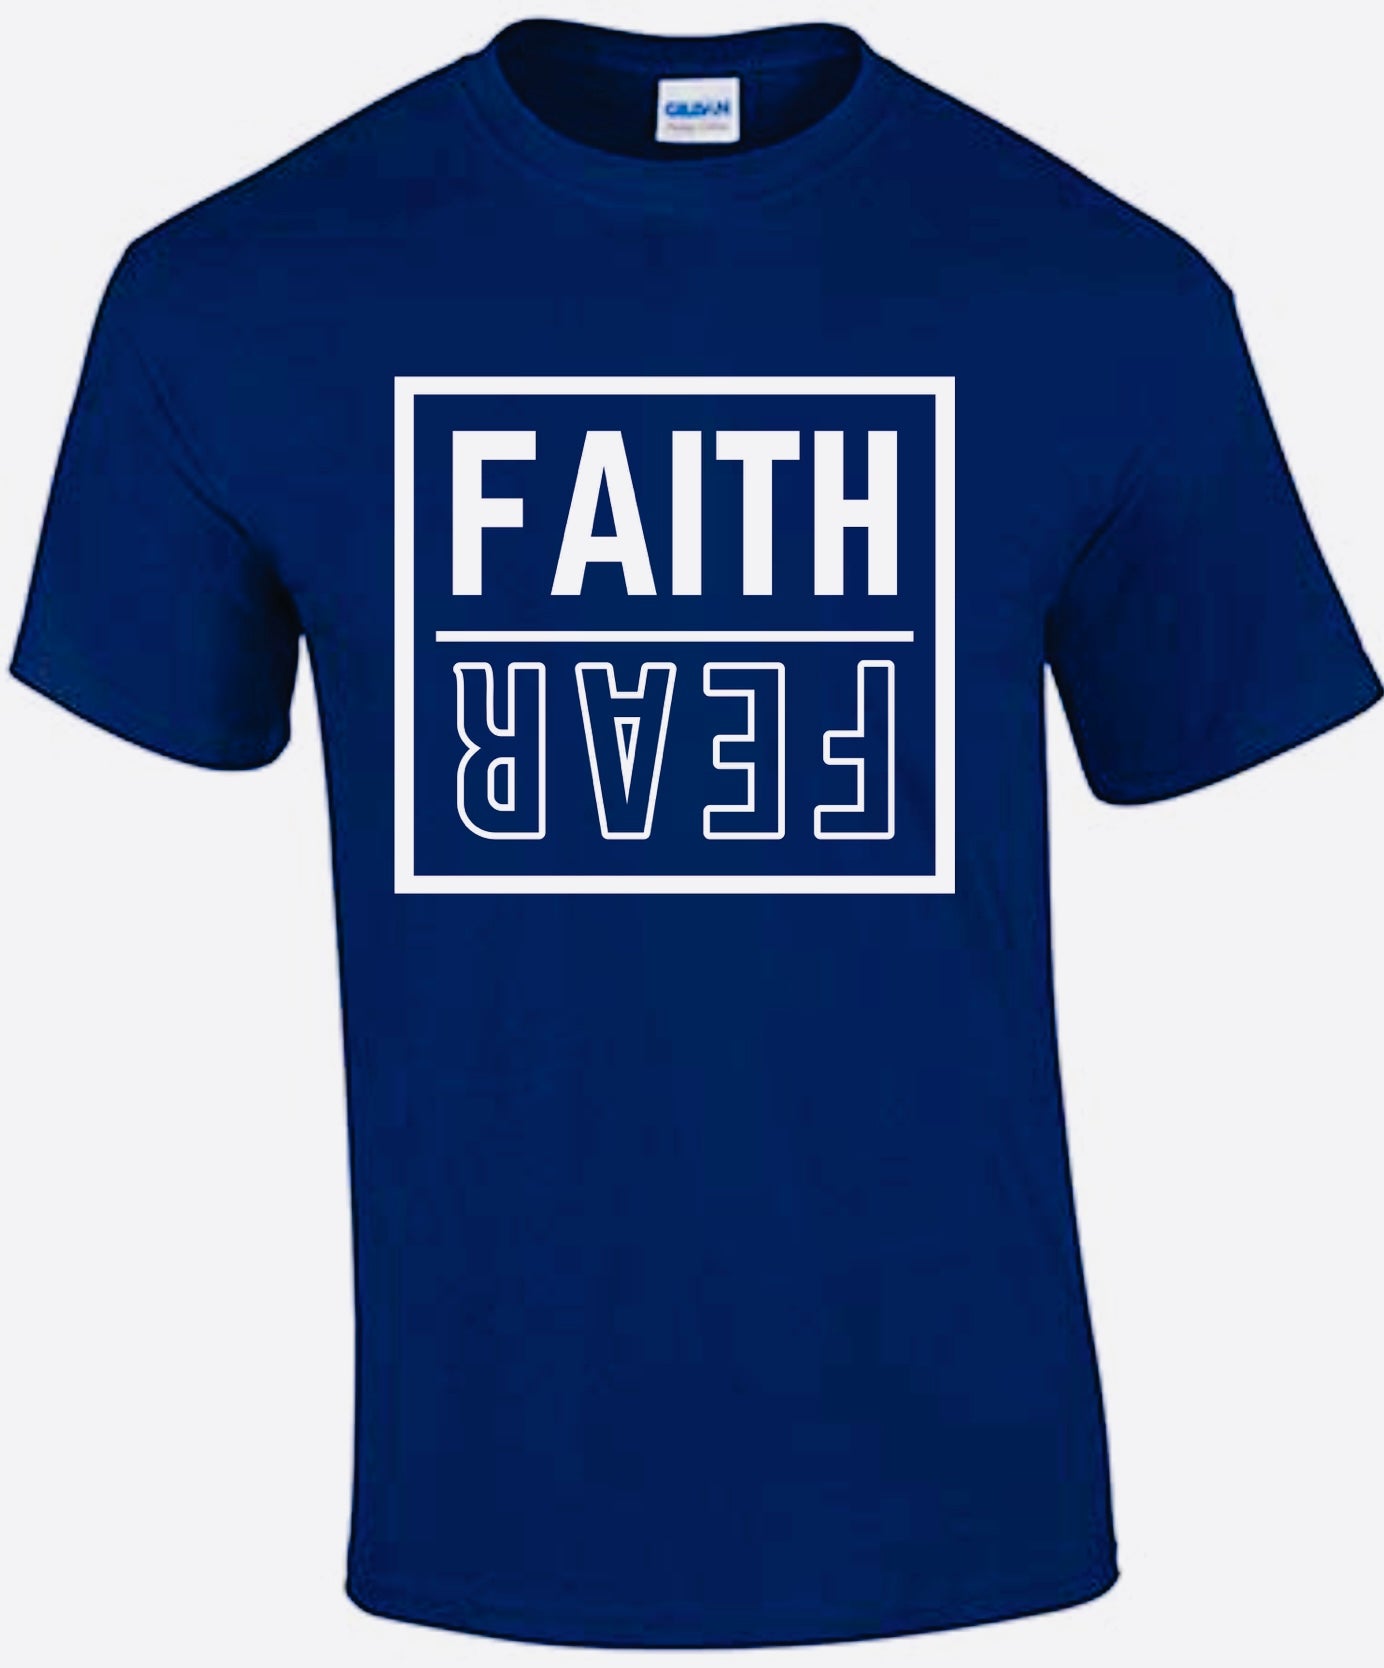 Faith Over Fear Shirt (Men & Women)